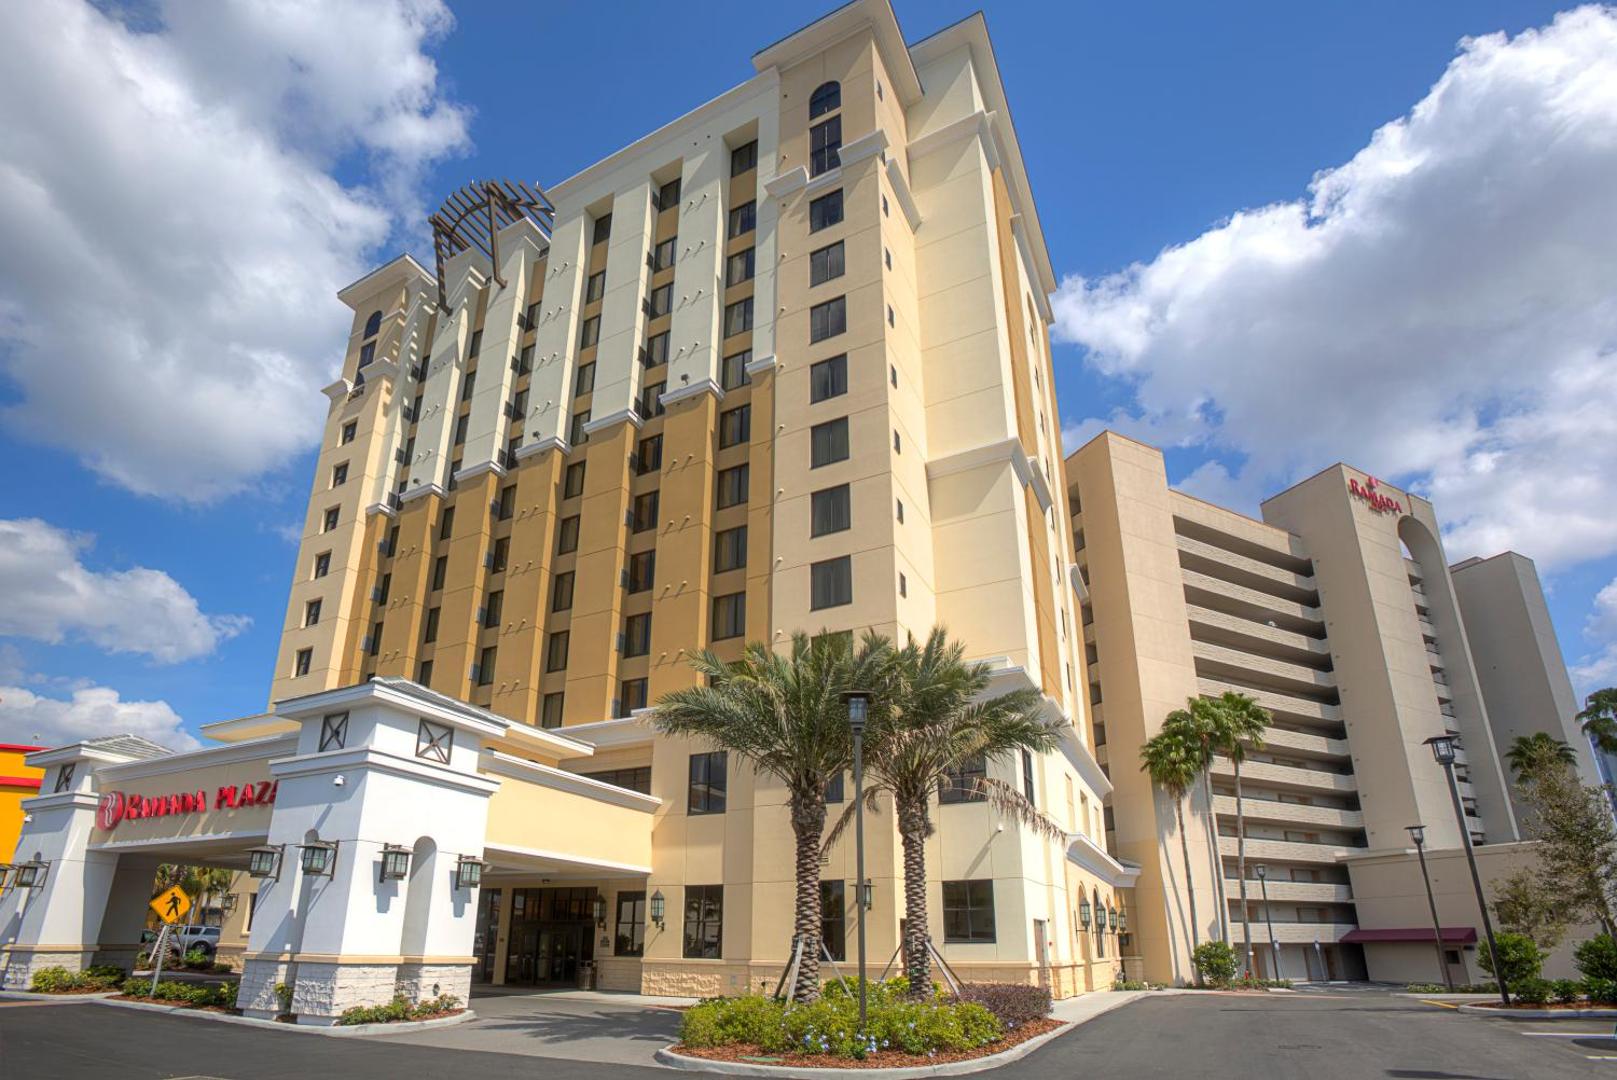 Ramada Plaza Resort Orlando